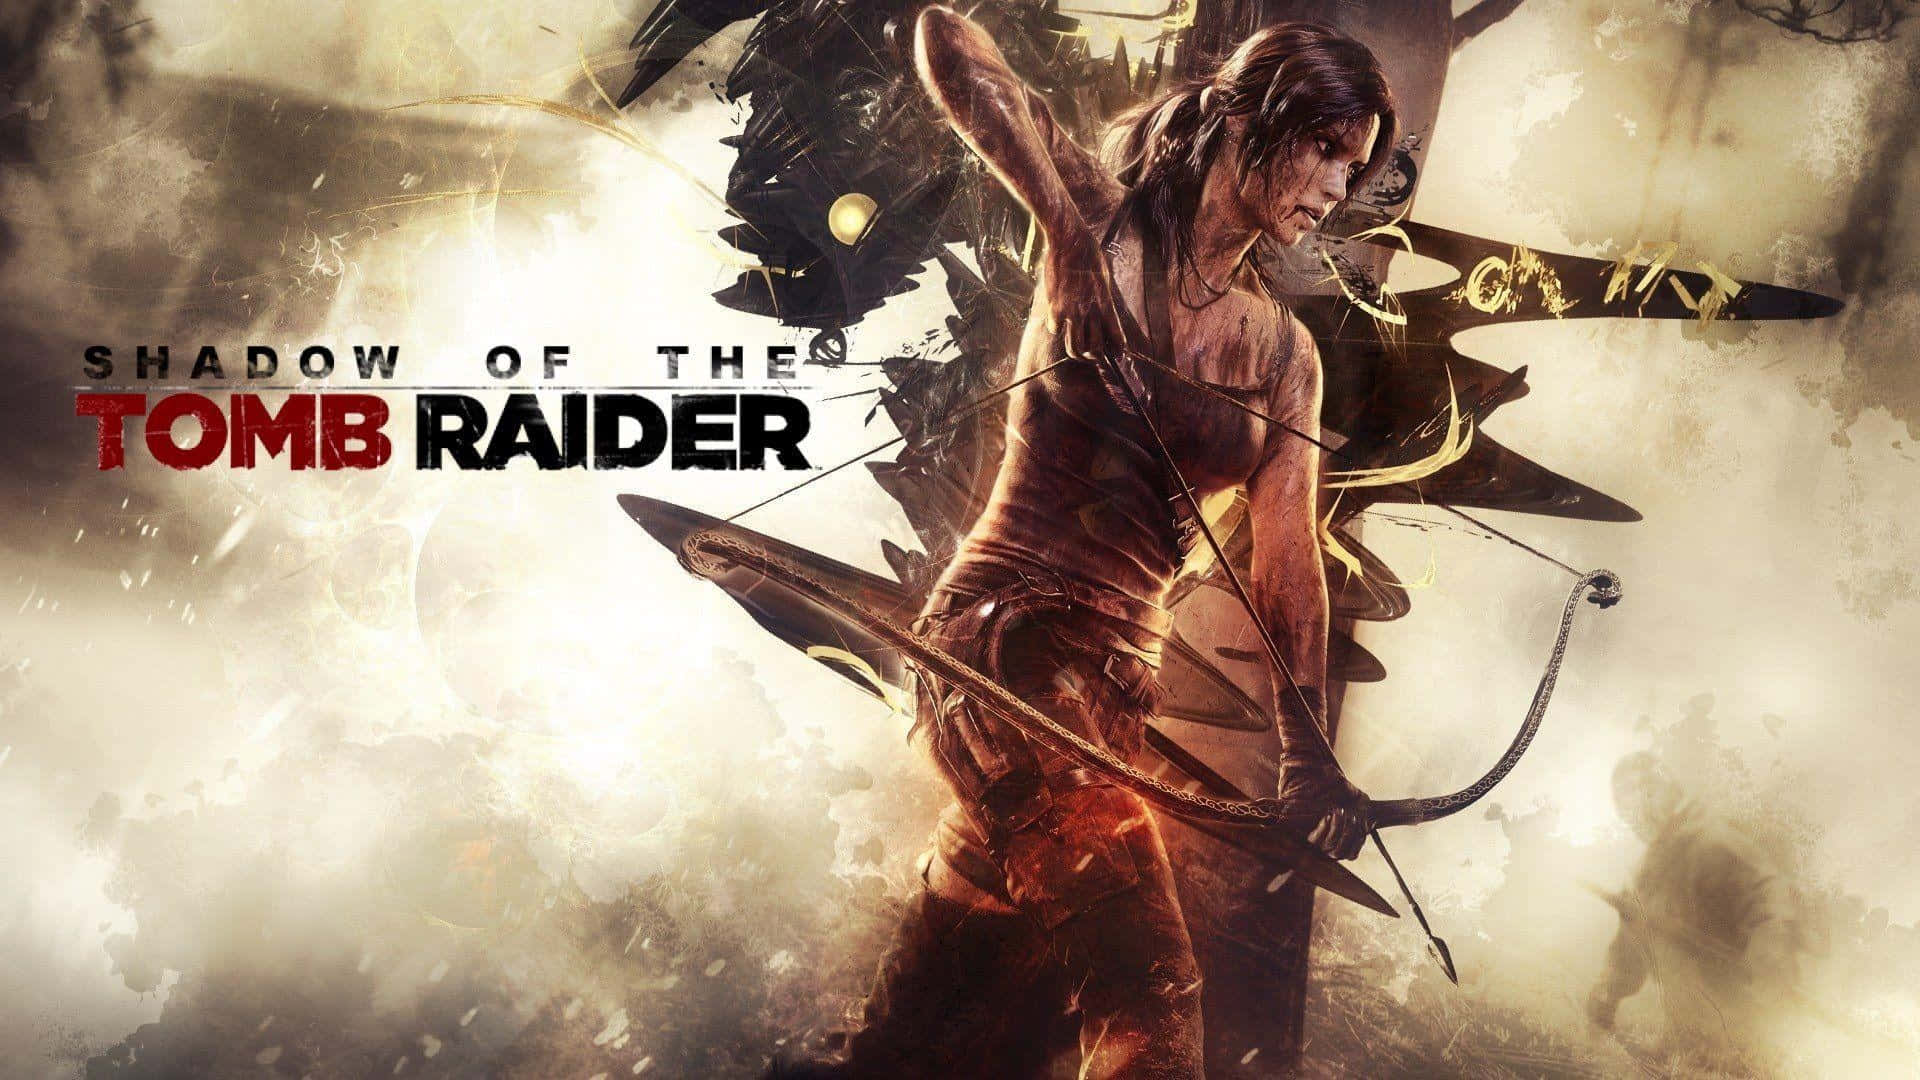 Scoprii Segreti Nelle Profondità Di Shadow Of The Tomb Raider